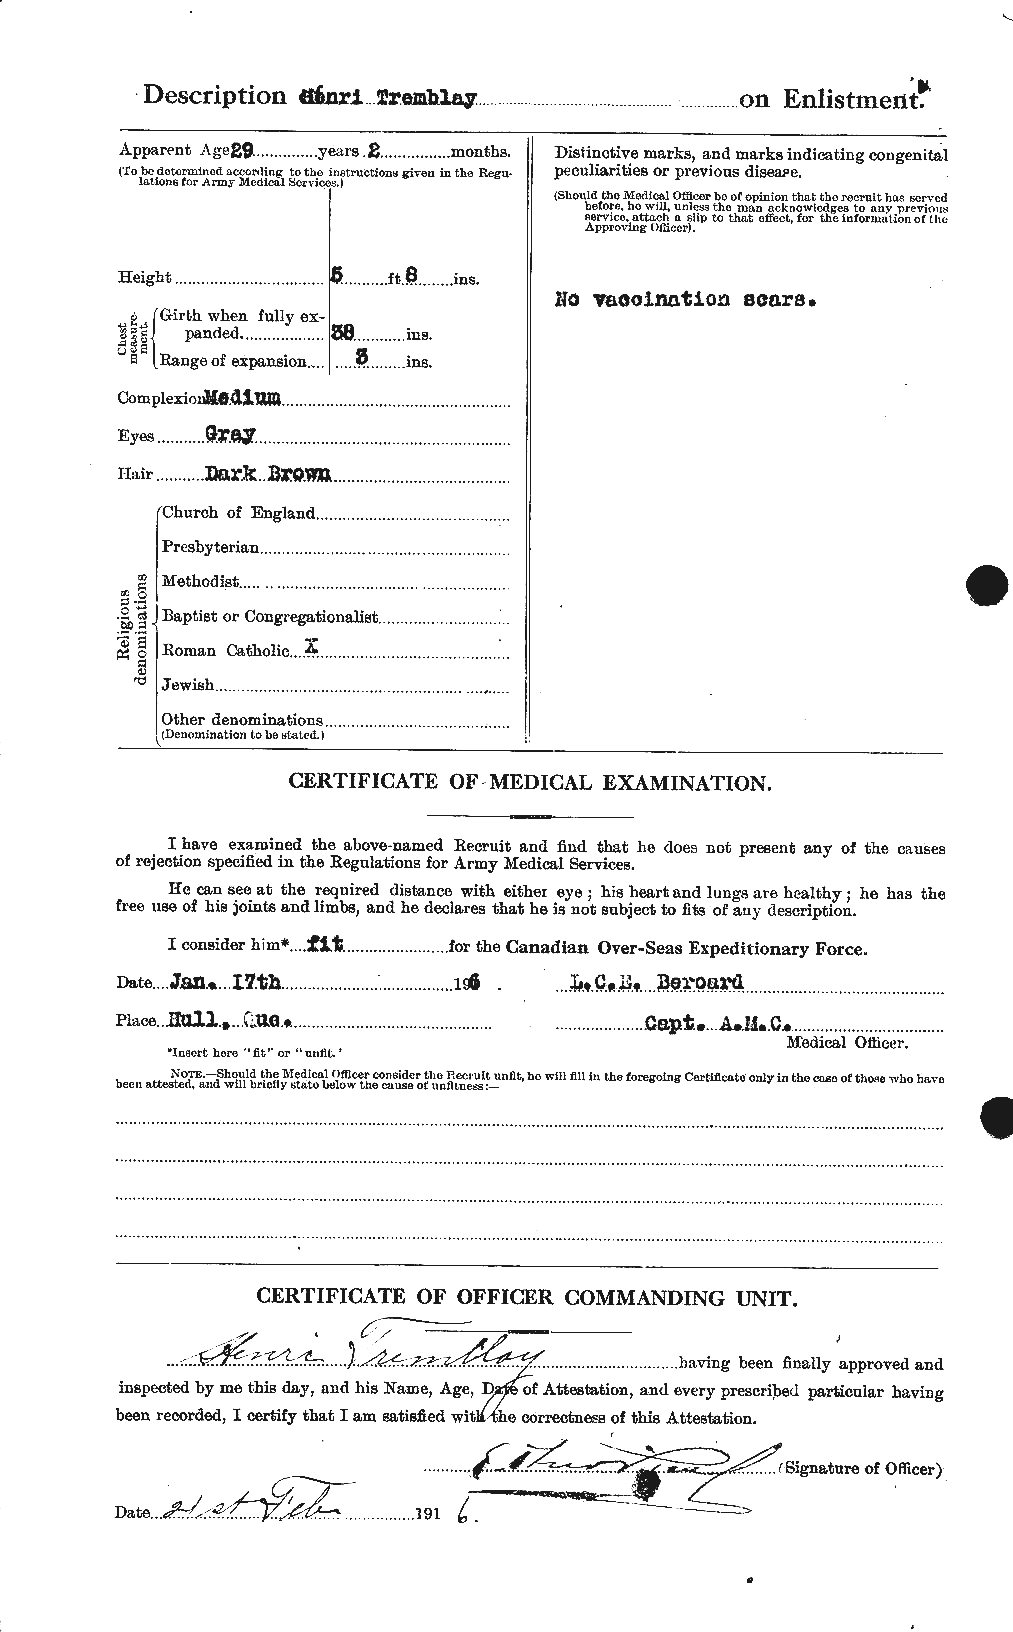 Dossiers du Personnel de la Première Guerre mondiale - CEC 639081b